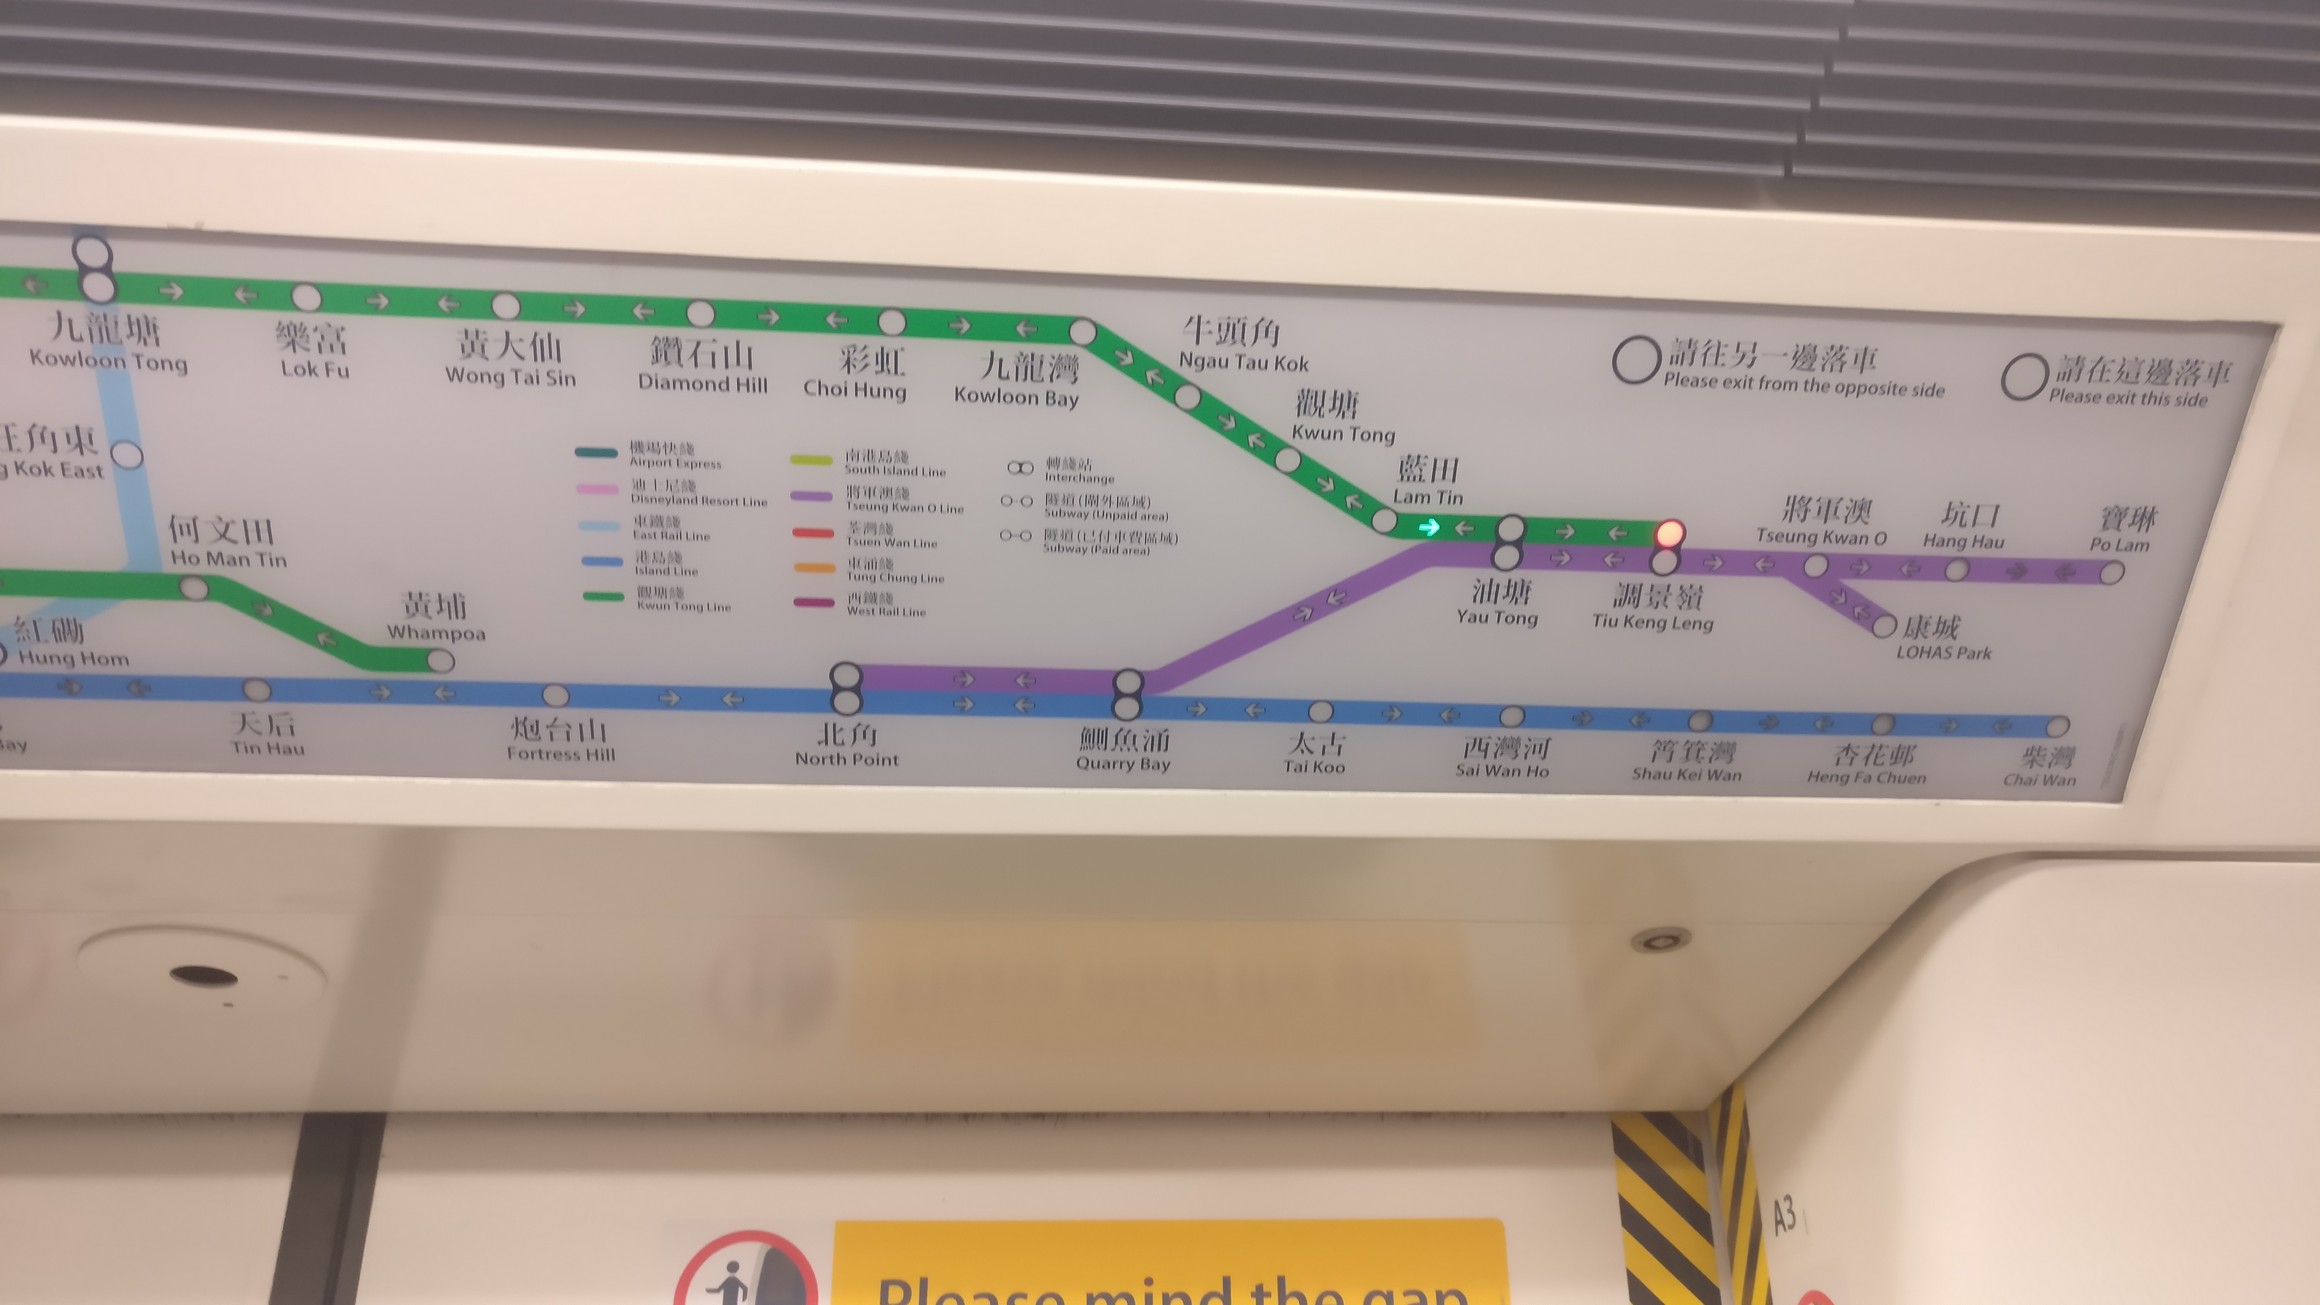 【地铁环游】香港地铁环游2018年1月